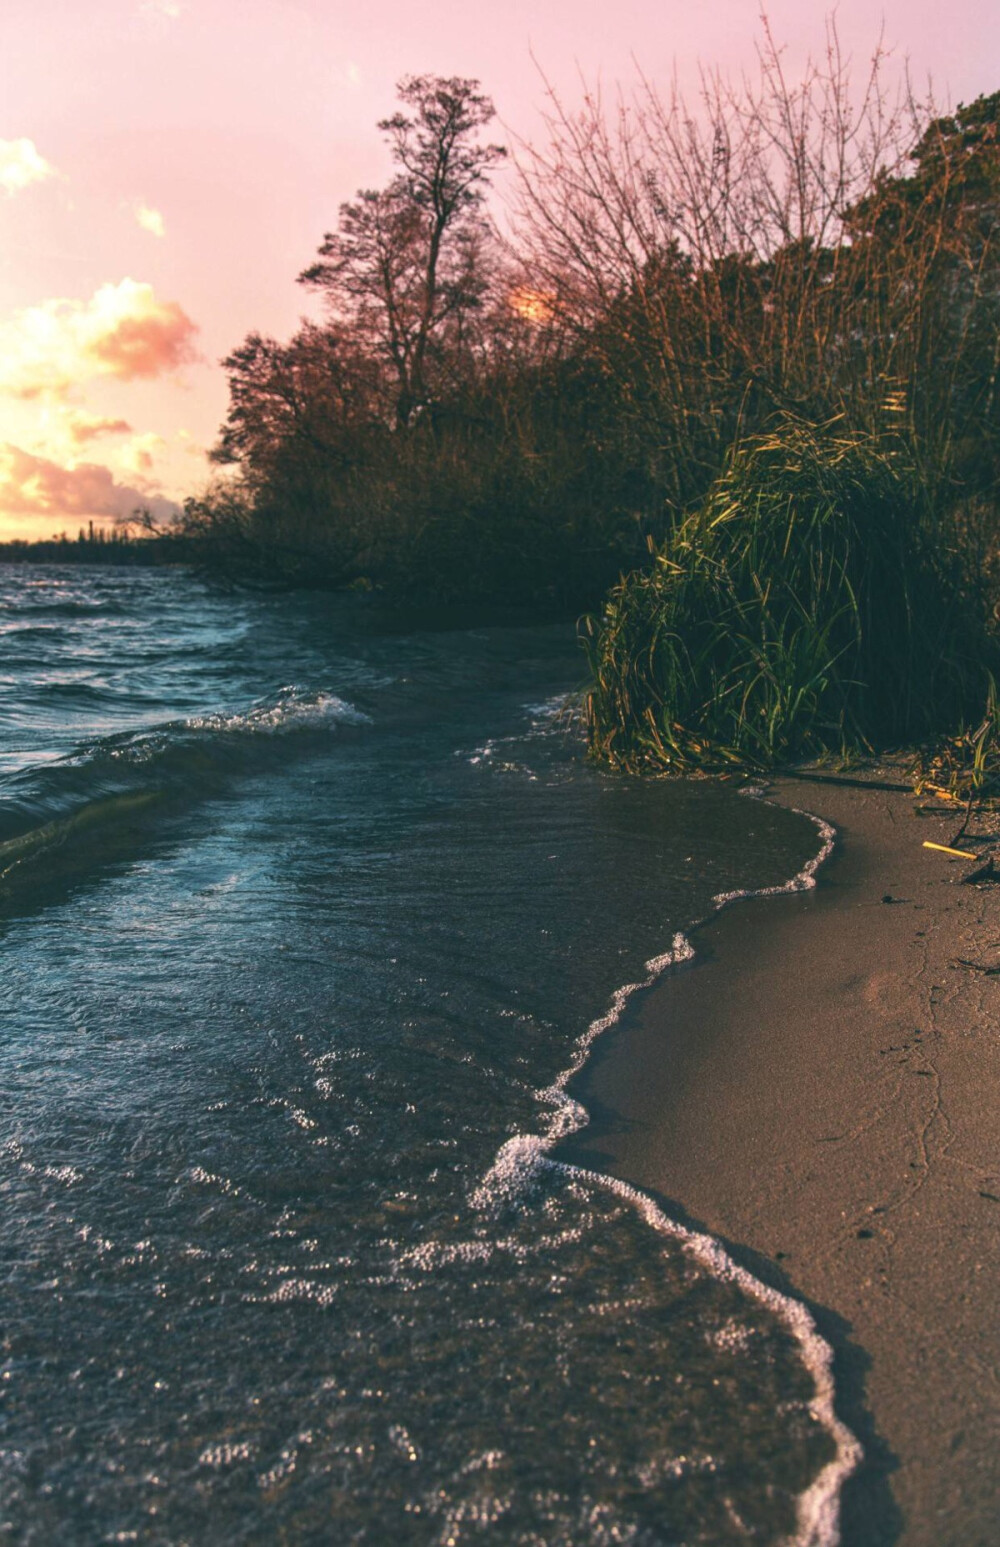 手机壁纸 海滩 夕阳 树木 摄影✨INNER LOVE✨